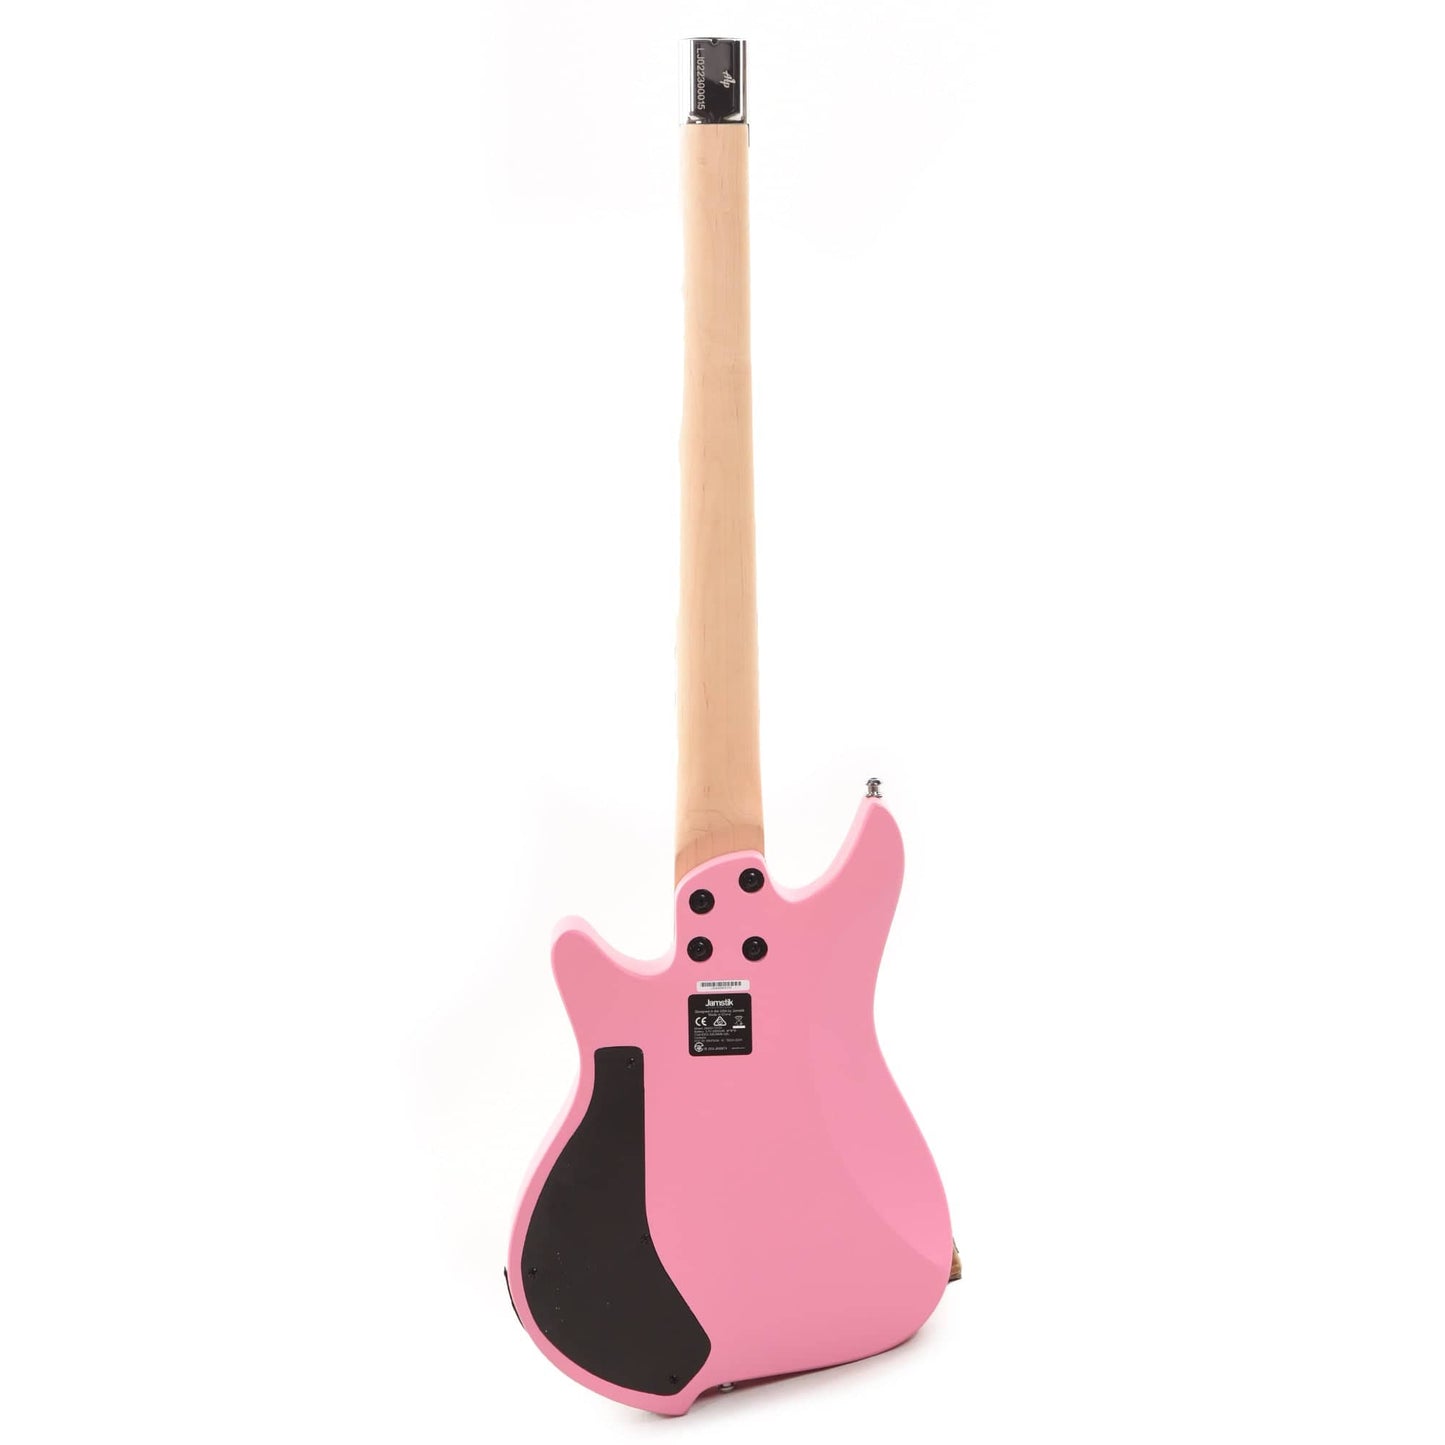 Jamstik Studio MIDI Guitar Matte Pink Electric Guitars / Solid Body